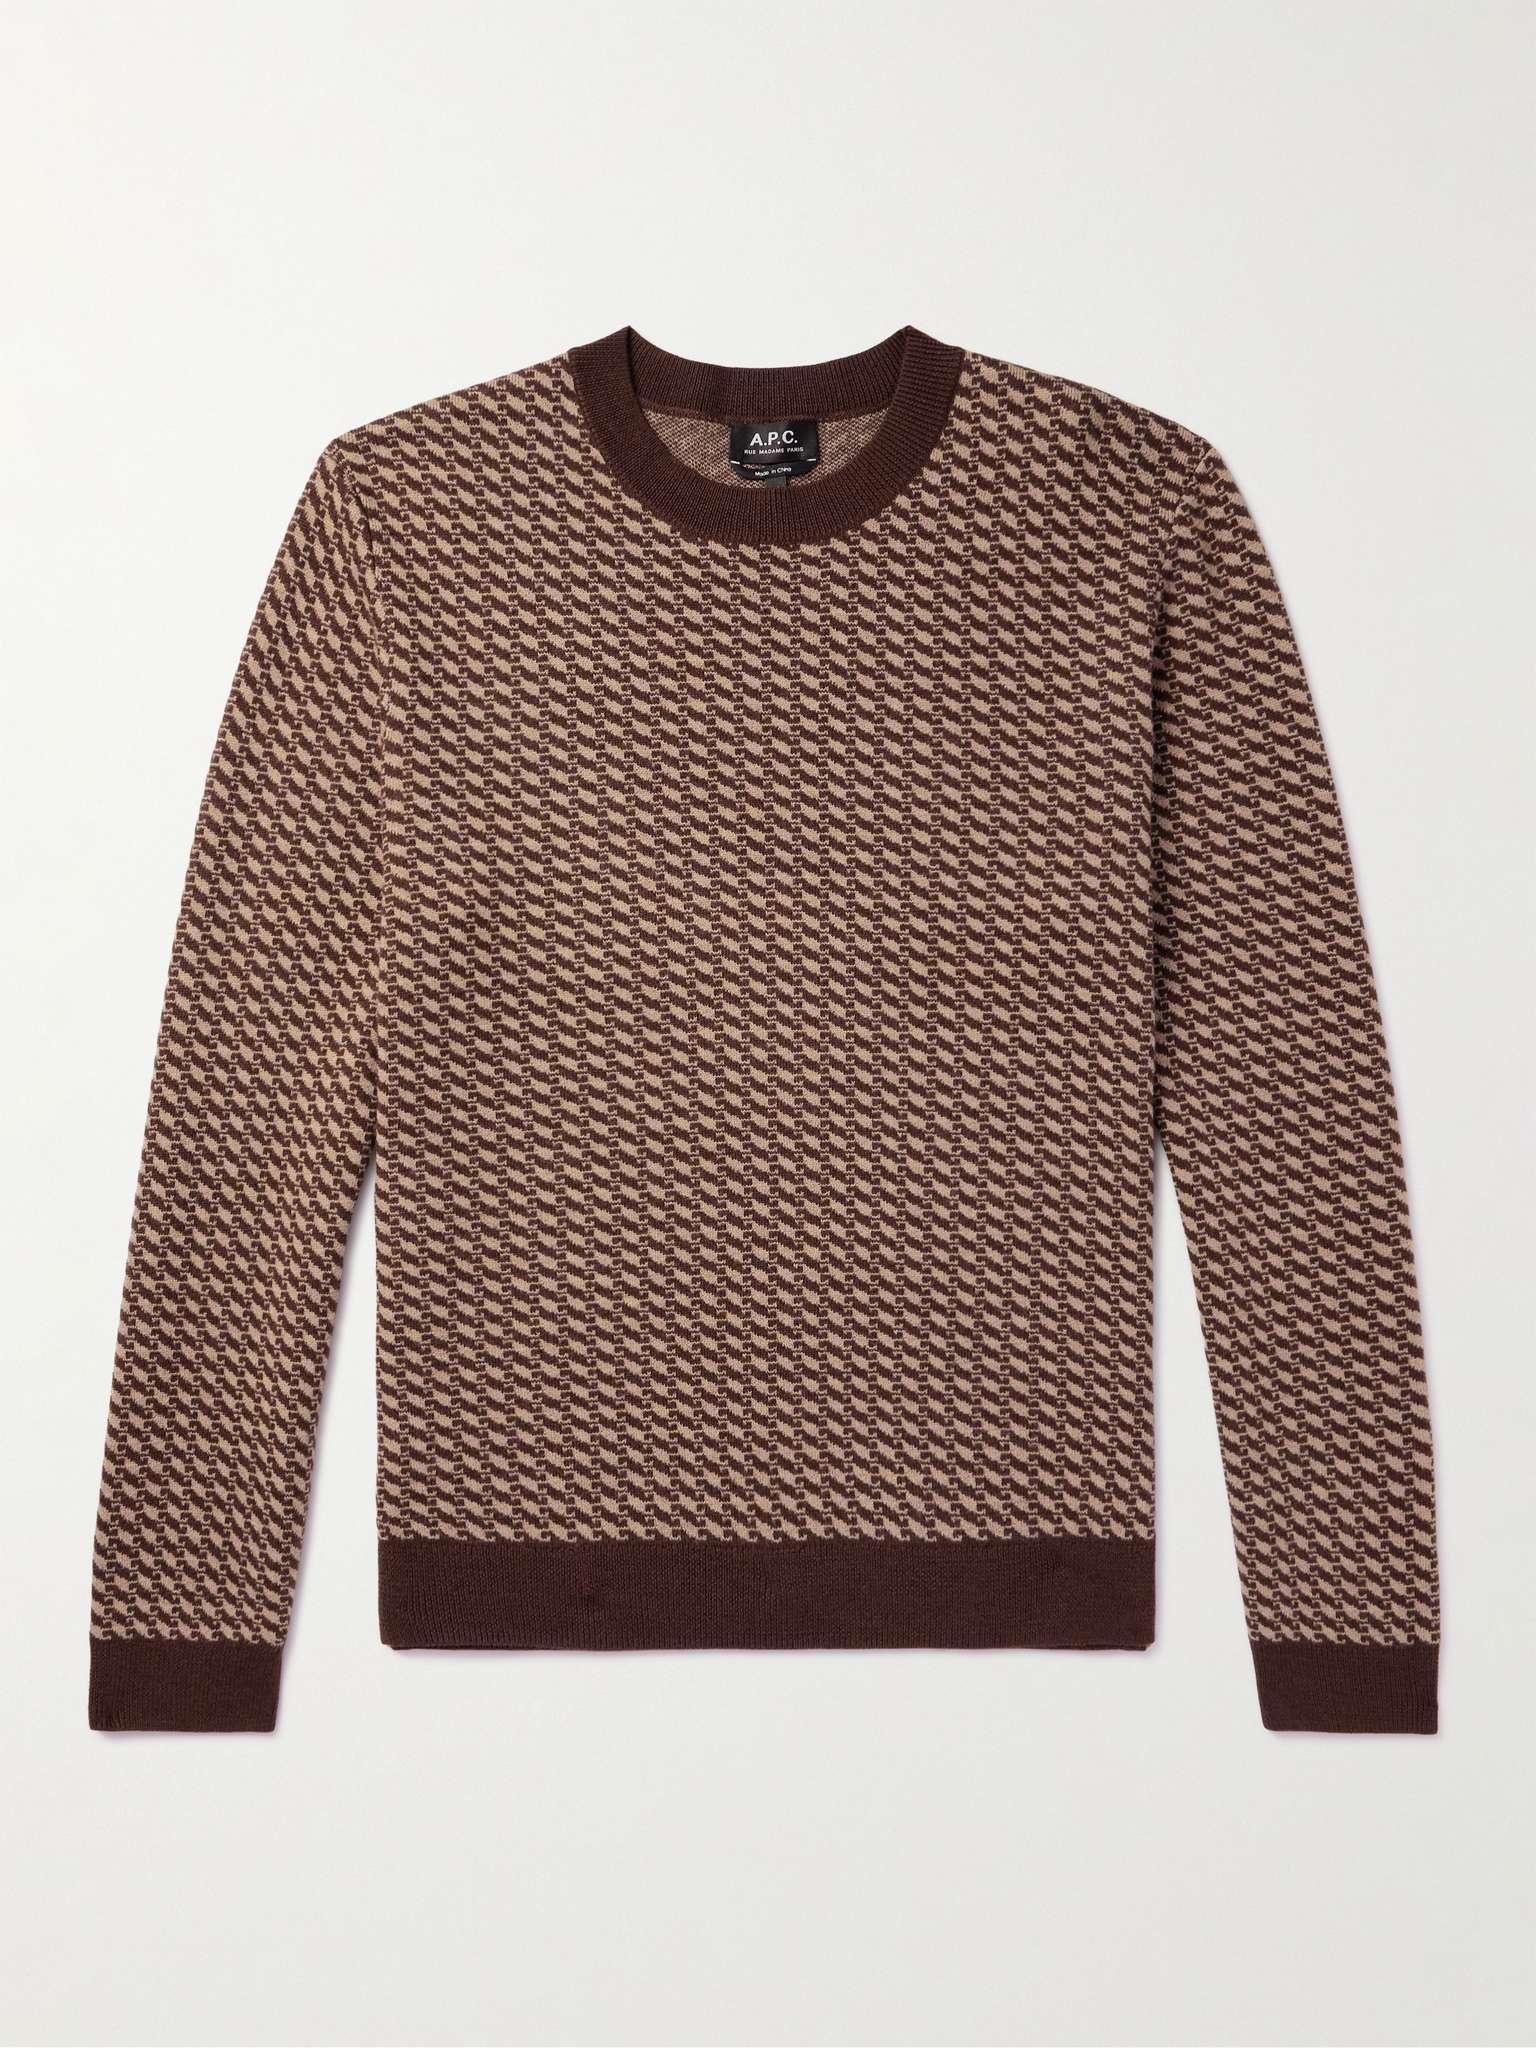 David Wool Sweater - 1